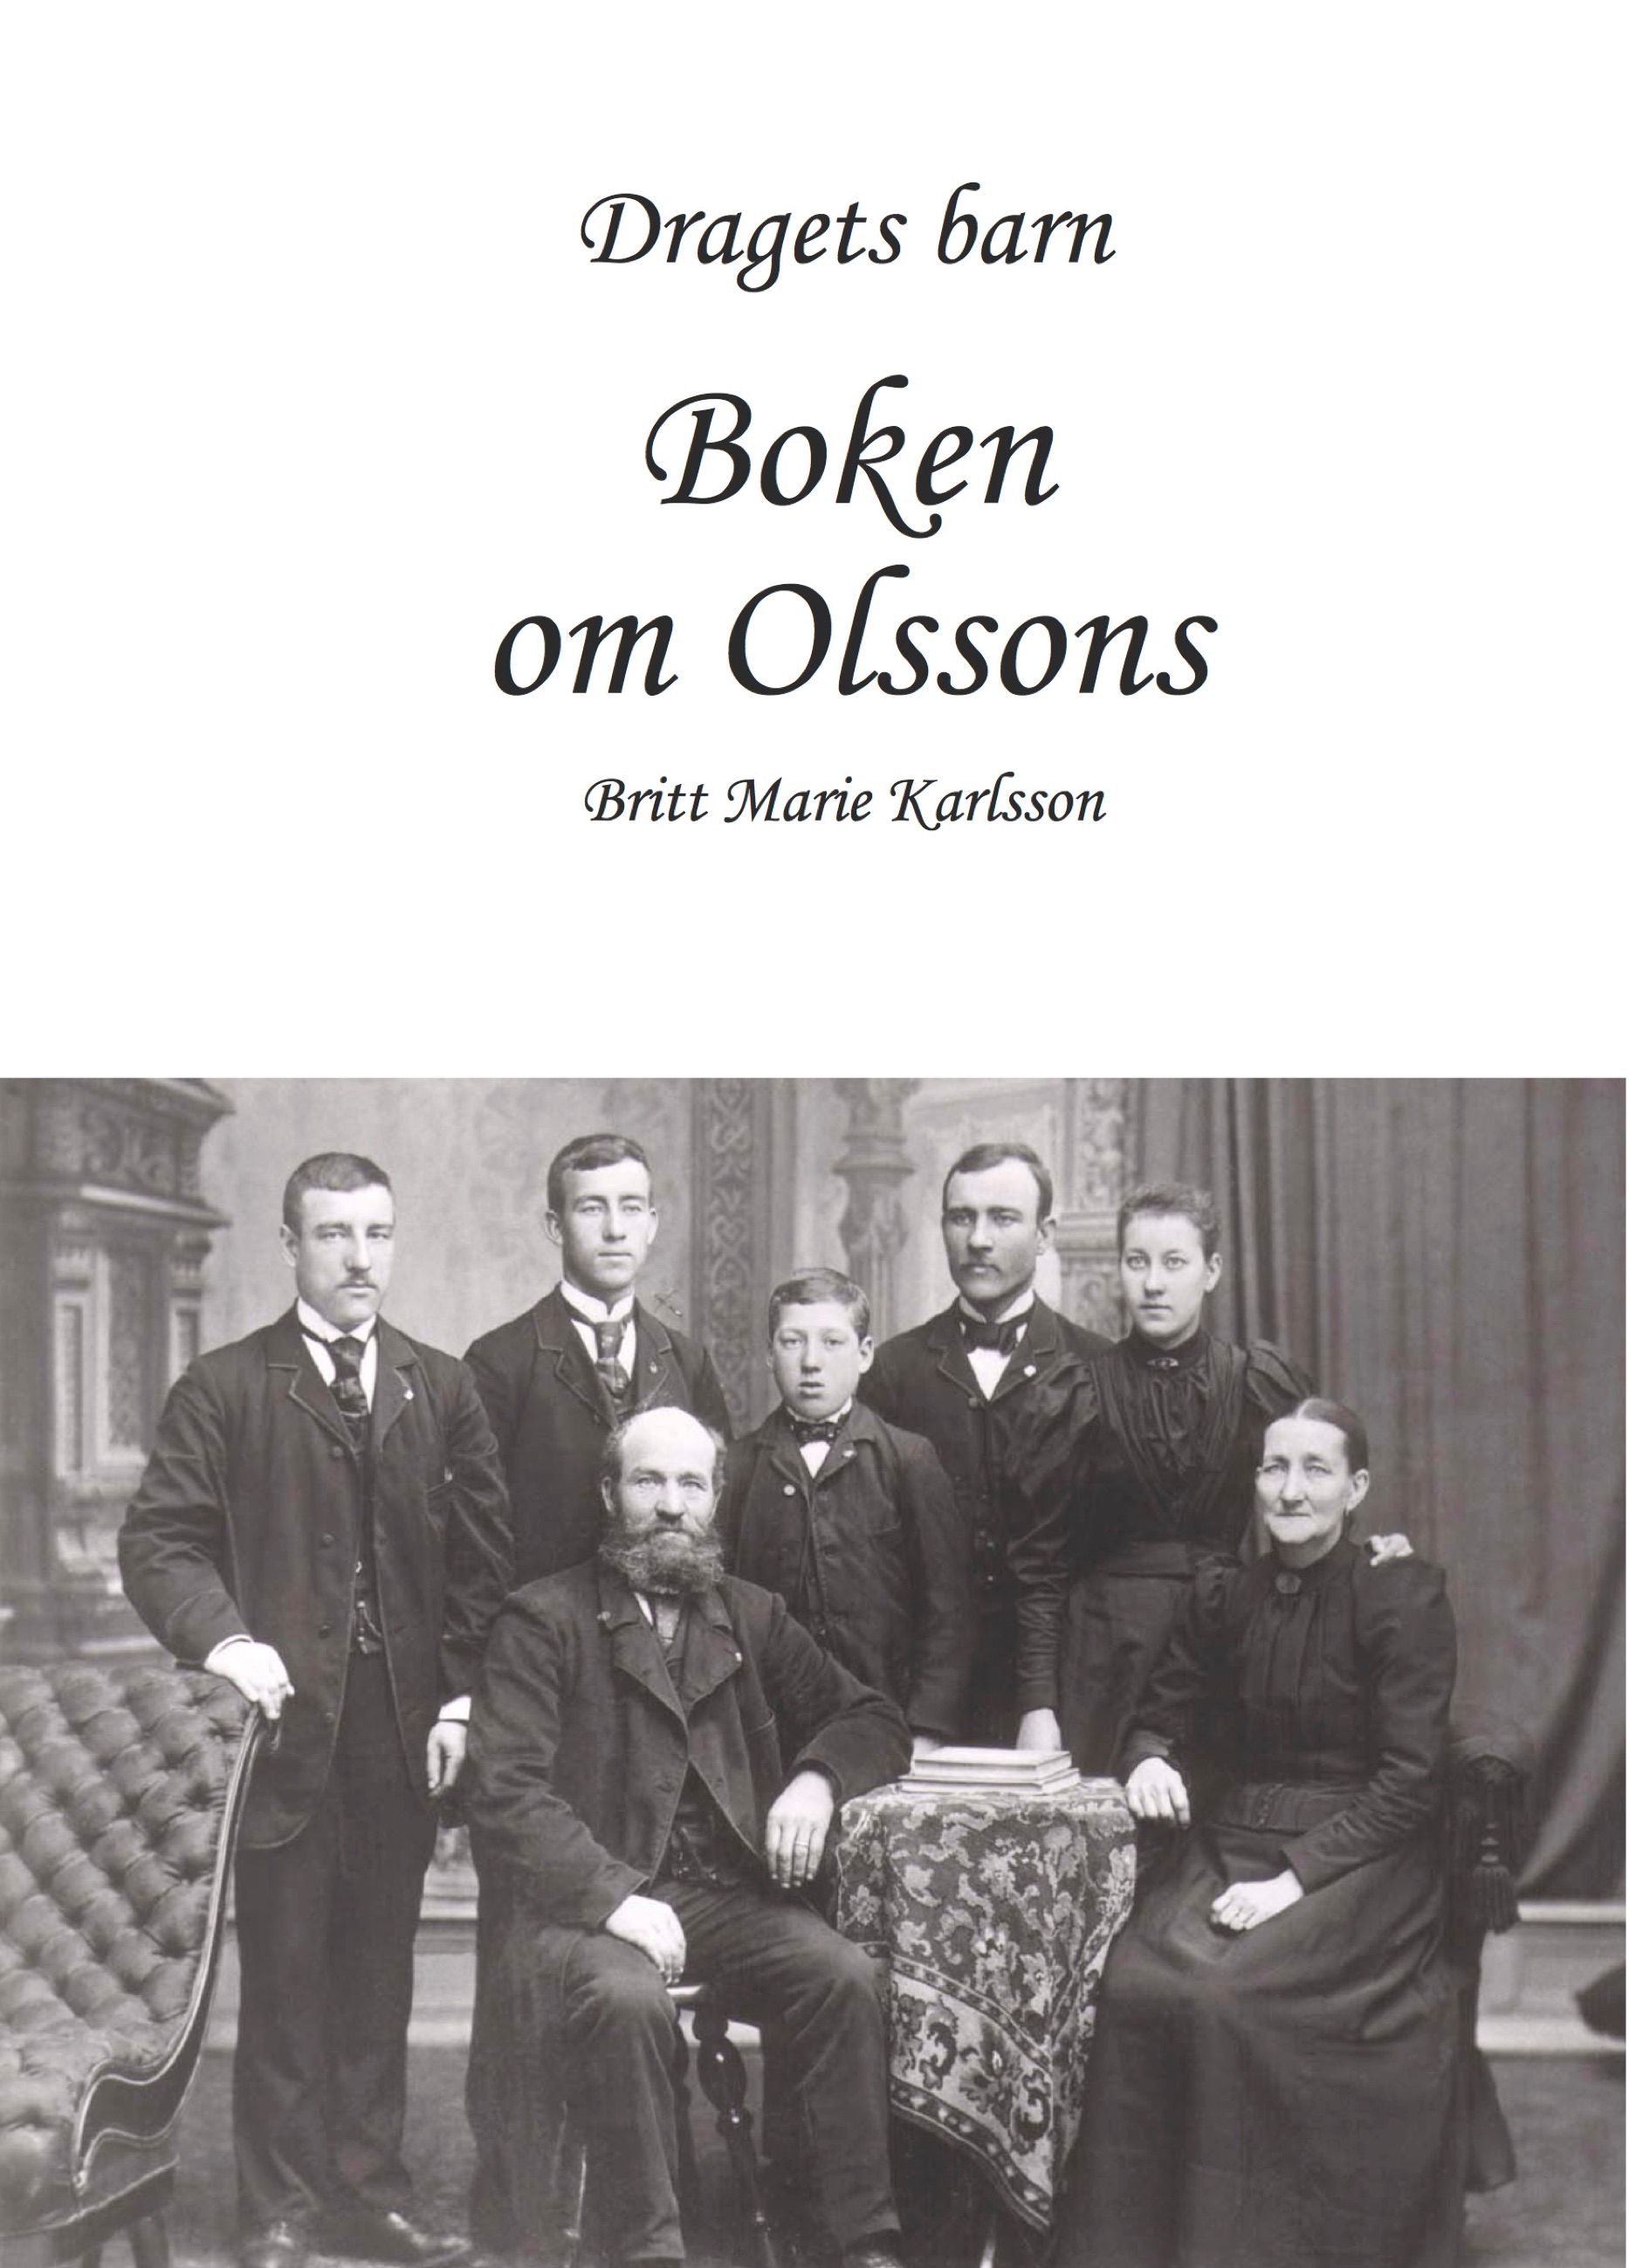 Dragets barn, Boken om Olssons, e-bog af Brittmarie Karlsson